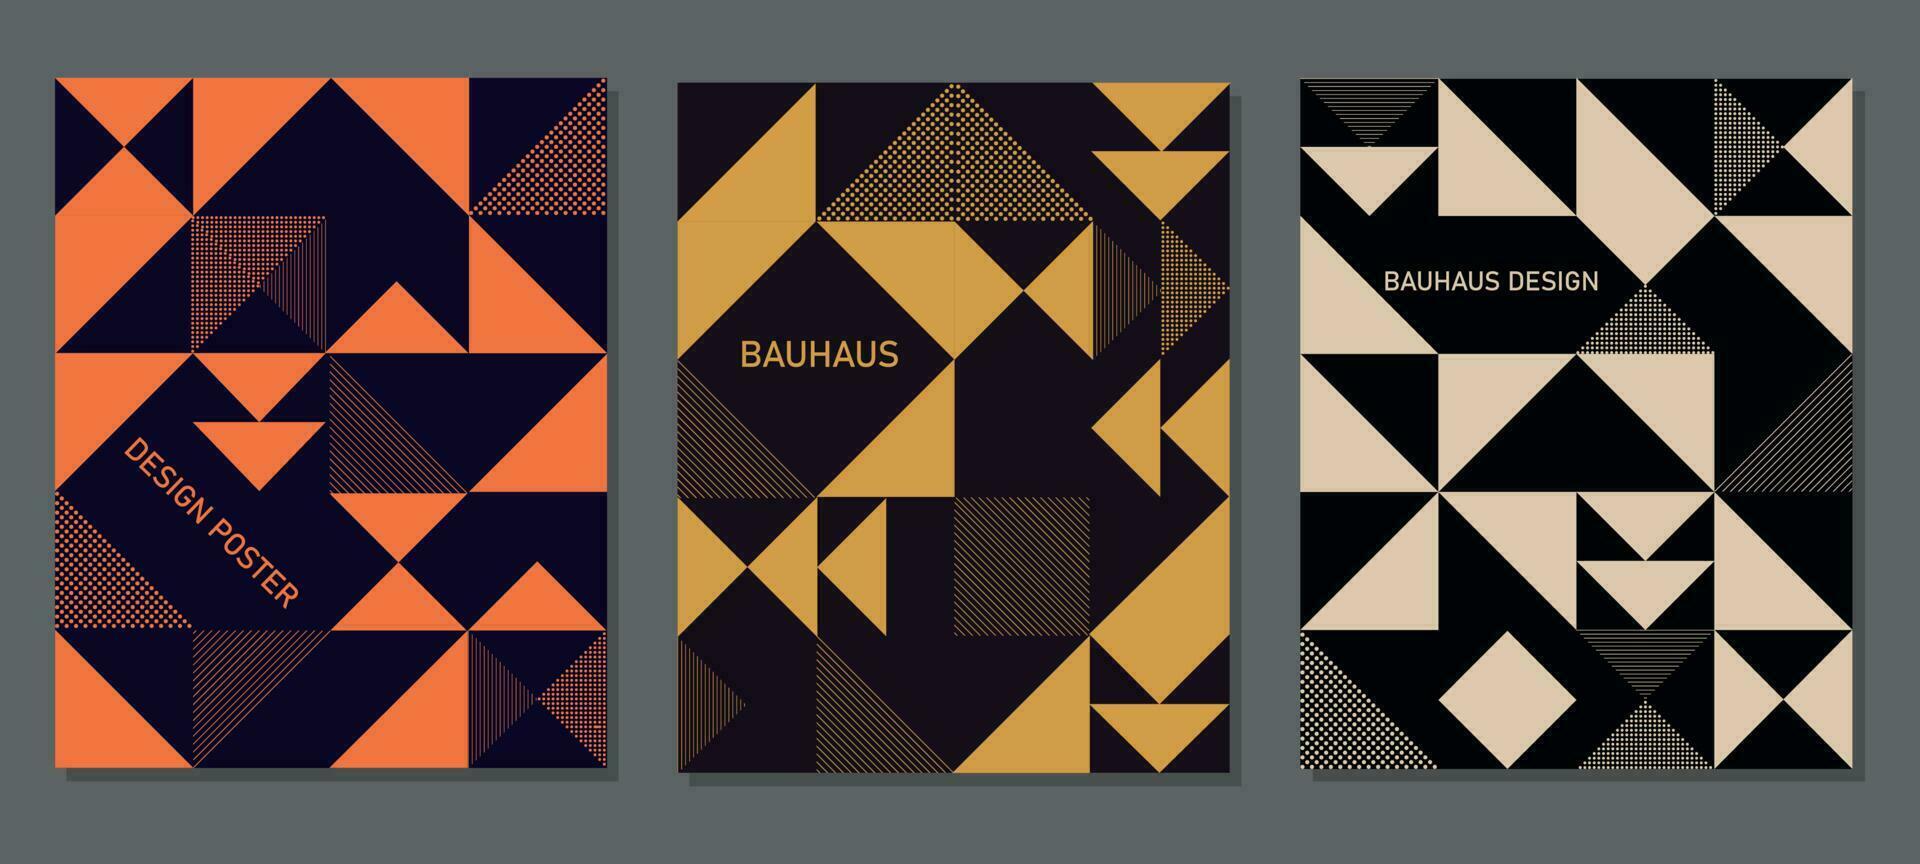 bauhaus geometrisk affischer. trogen abstrakt former. modern triangulär, fyrkant bakgrunder för design, omslag, social nätverk. vektor illustration.